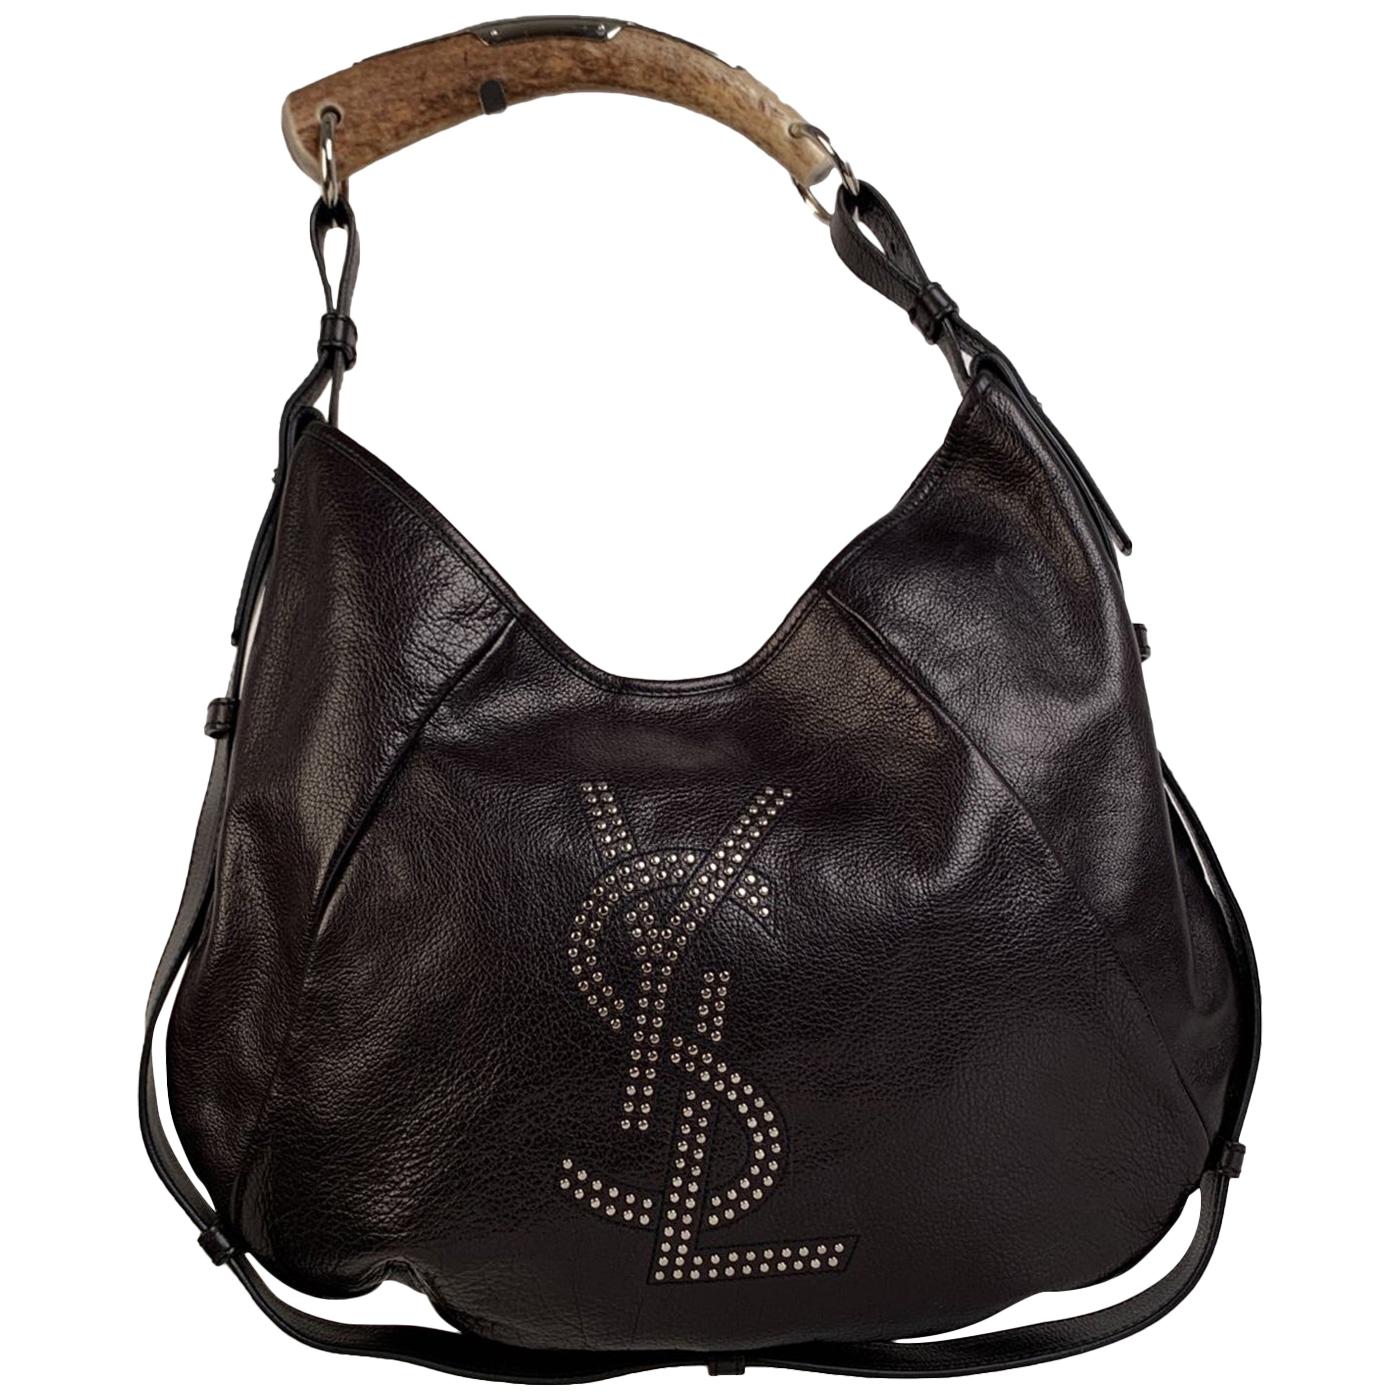 Yves Saint Laurent Black Leather Ysl Studded Mombasa Hobo Bag